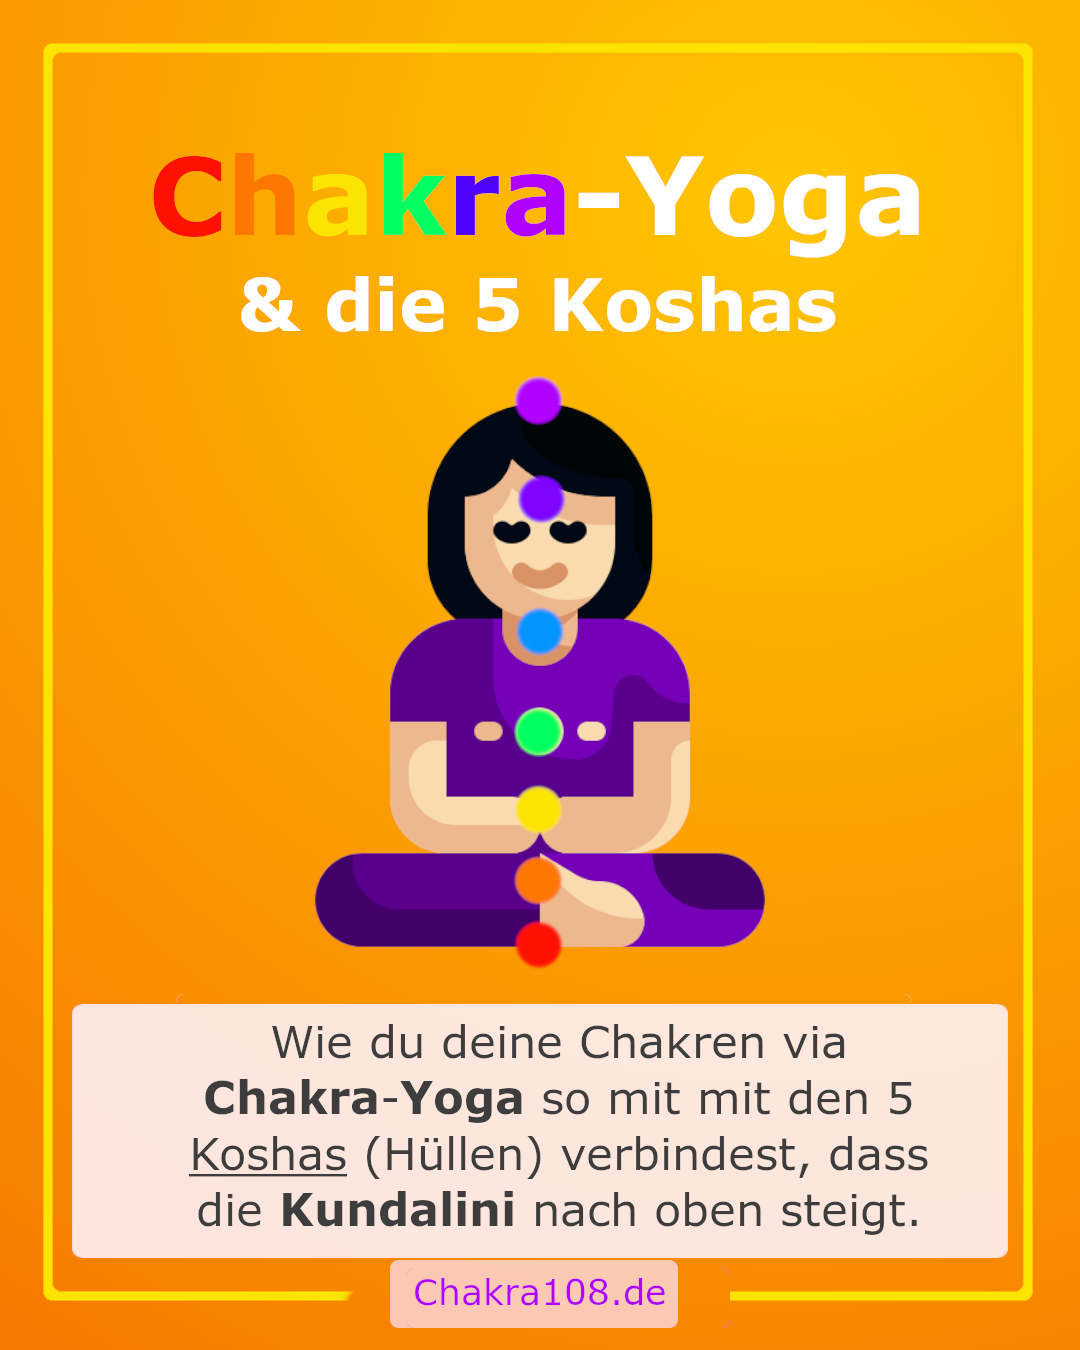 Wie du deine Chakren via Chakra-Yoga so mit mit den 5 Koshas (Hüllen) verbindest, dass die Kundalini nach oben steigt.